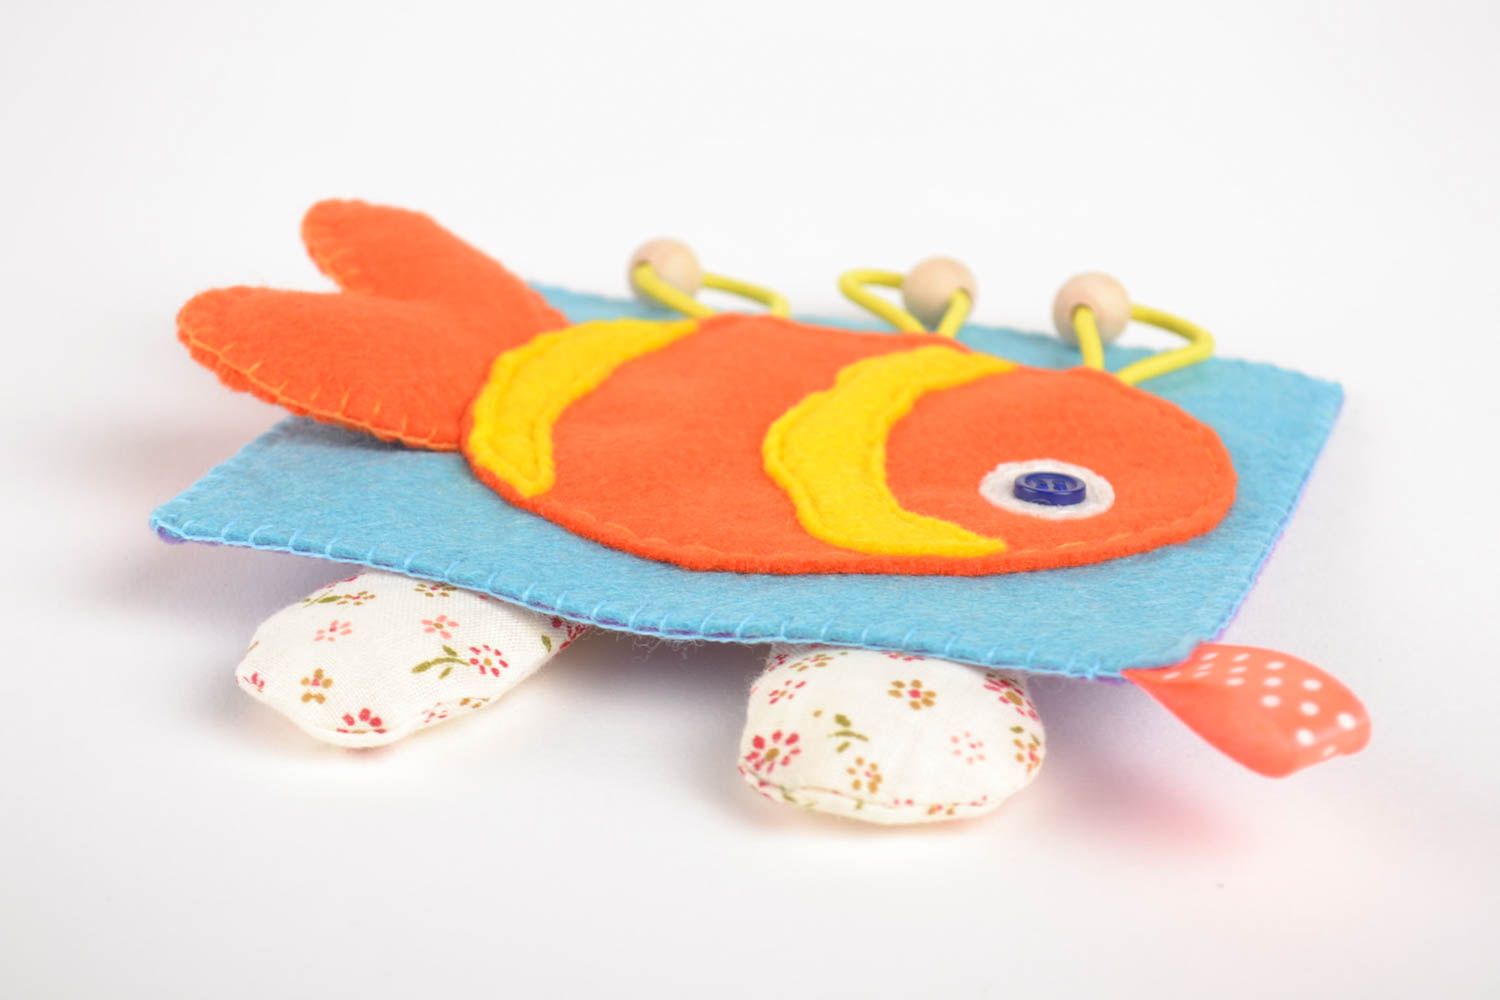 Handmade kreatives Spielzeug Kinder Geschenk gutes Spielzeug schöne Dekoideen foto 3